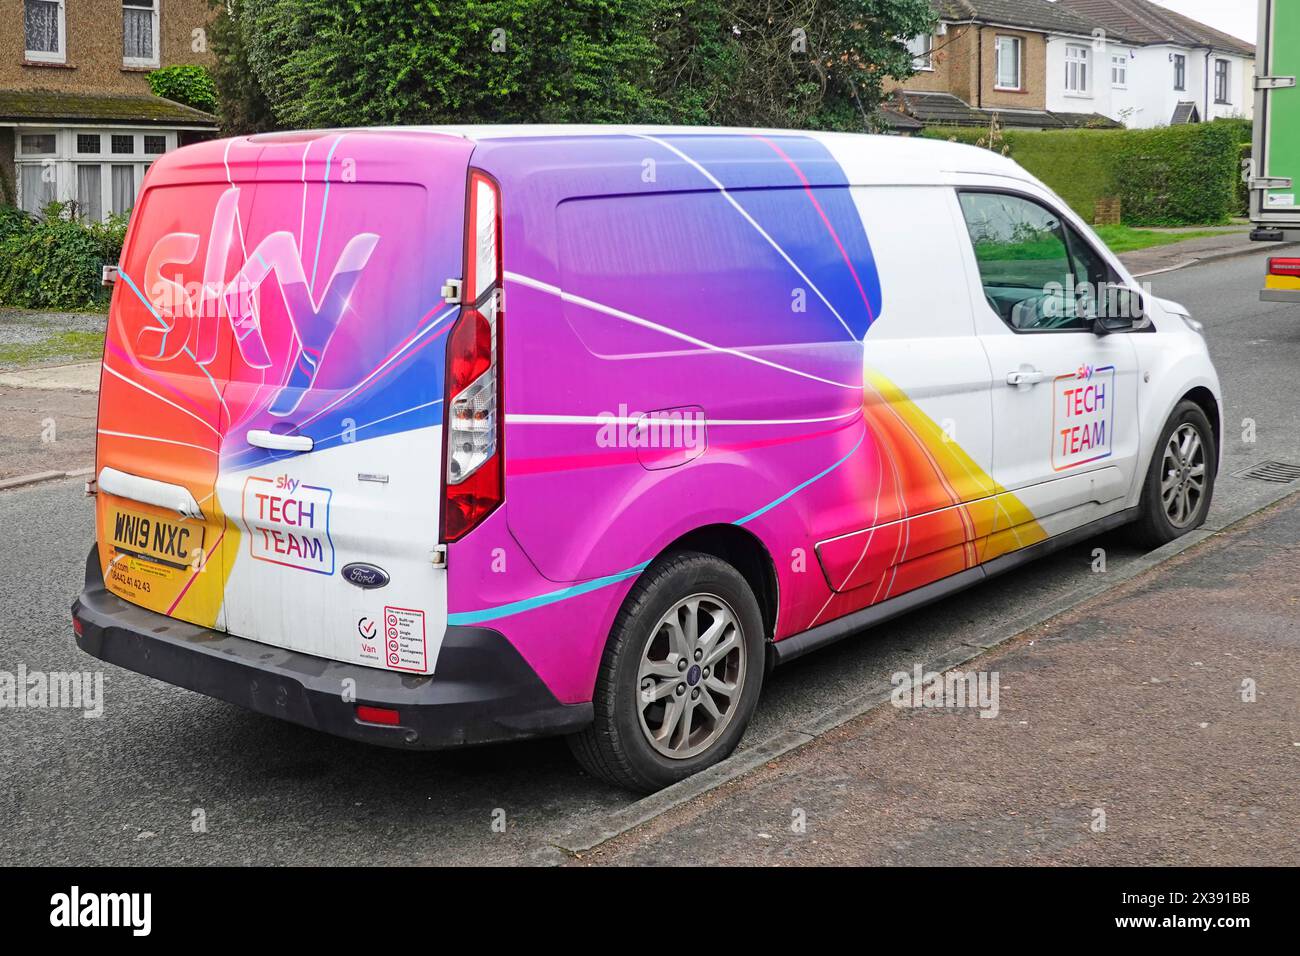 Sky Television Tech Team Ford Van auffällige farbenfrohe Grafiken Seite und Rückseite geparkt vor Wohnhäusern Wohnstraße Brentwood Essex England Großbritannien Stockfoto